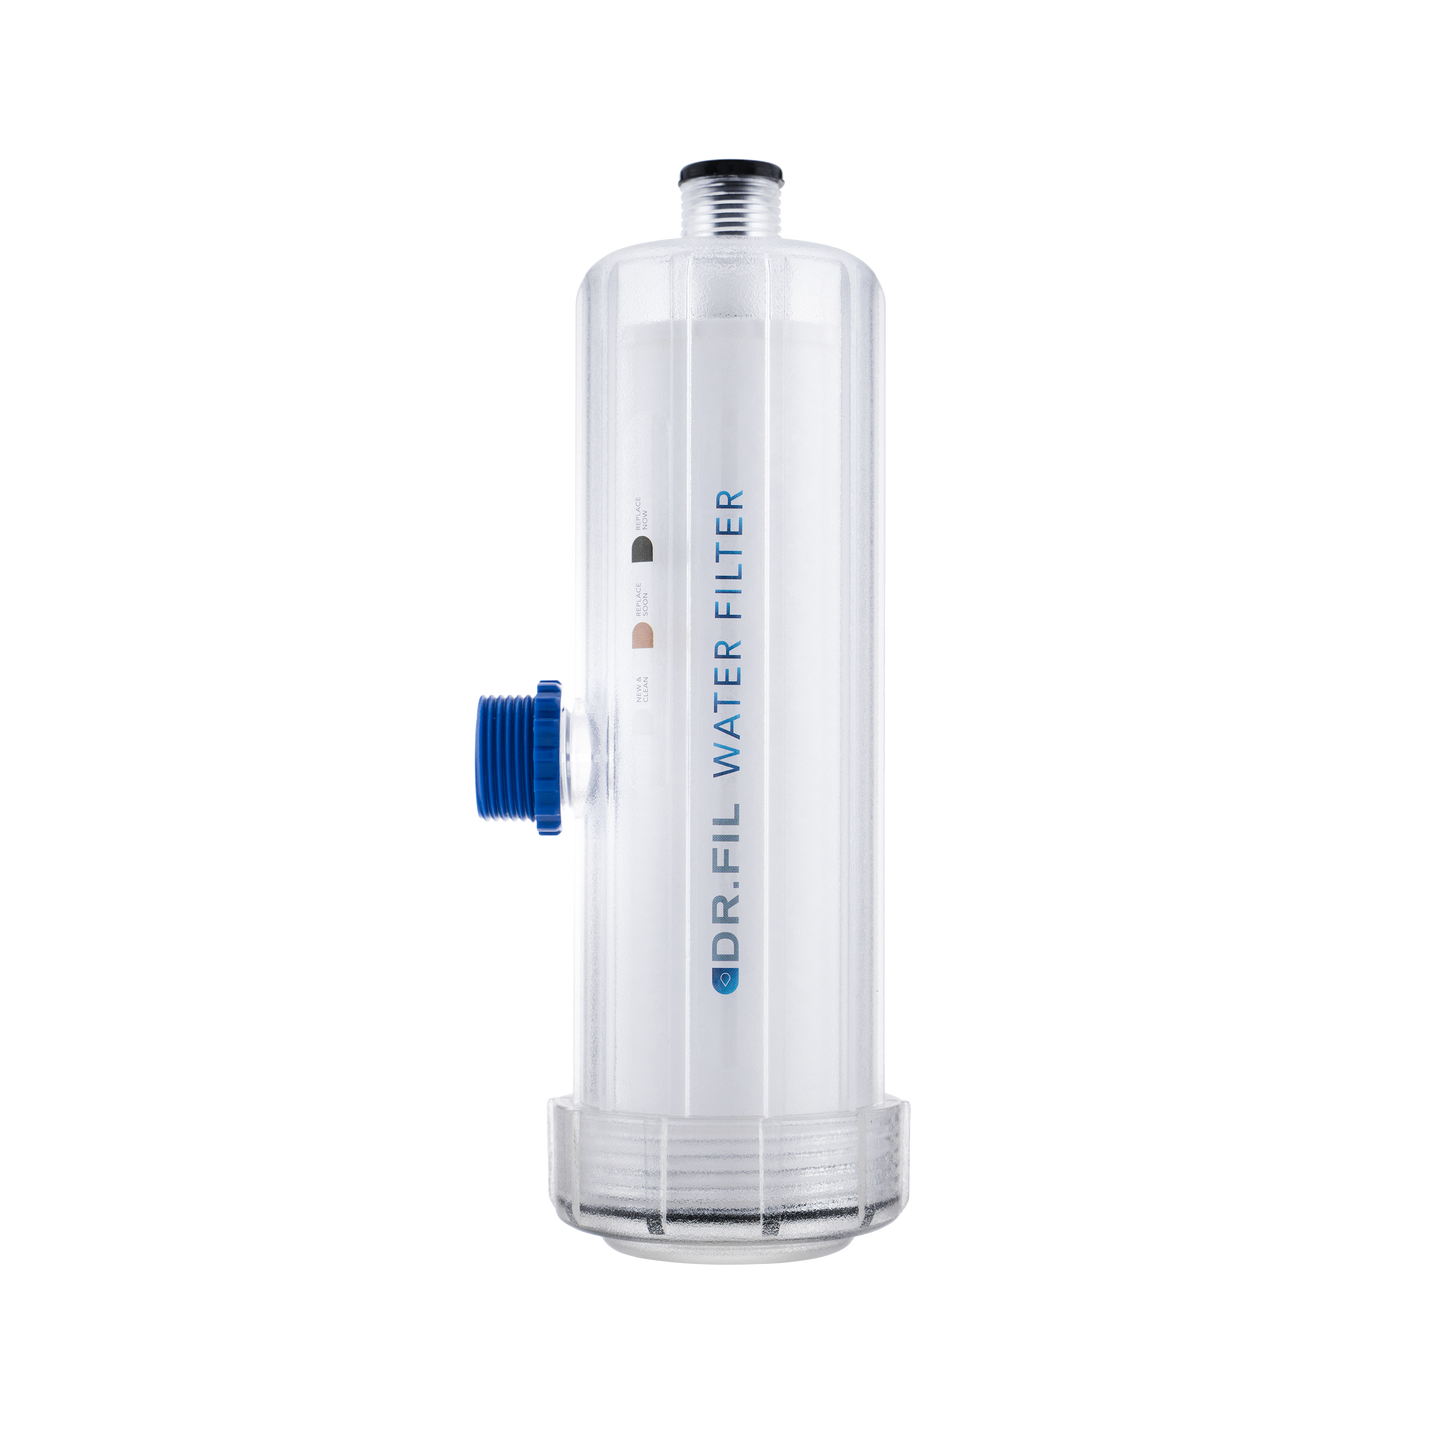 DR.FIL Water Filter Basic Kit